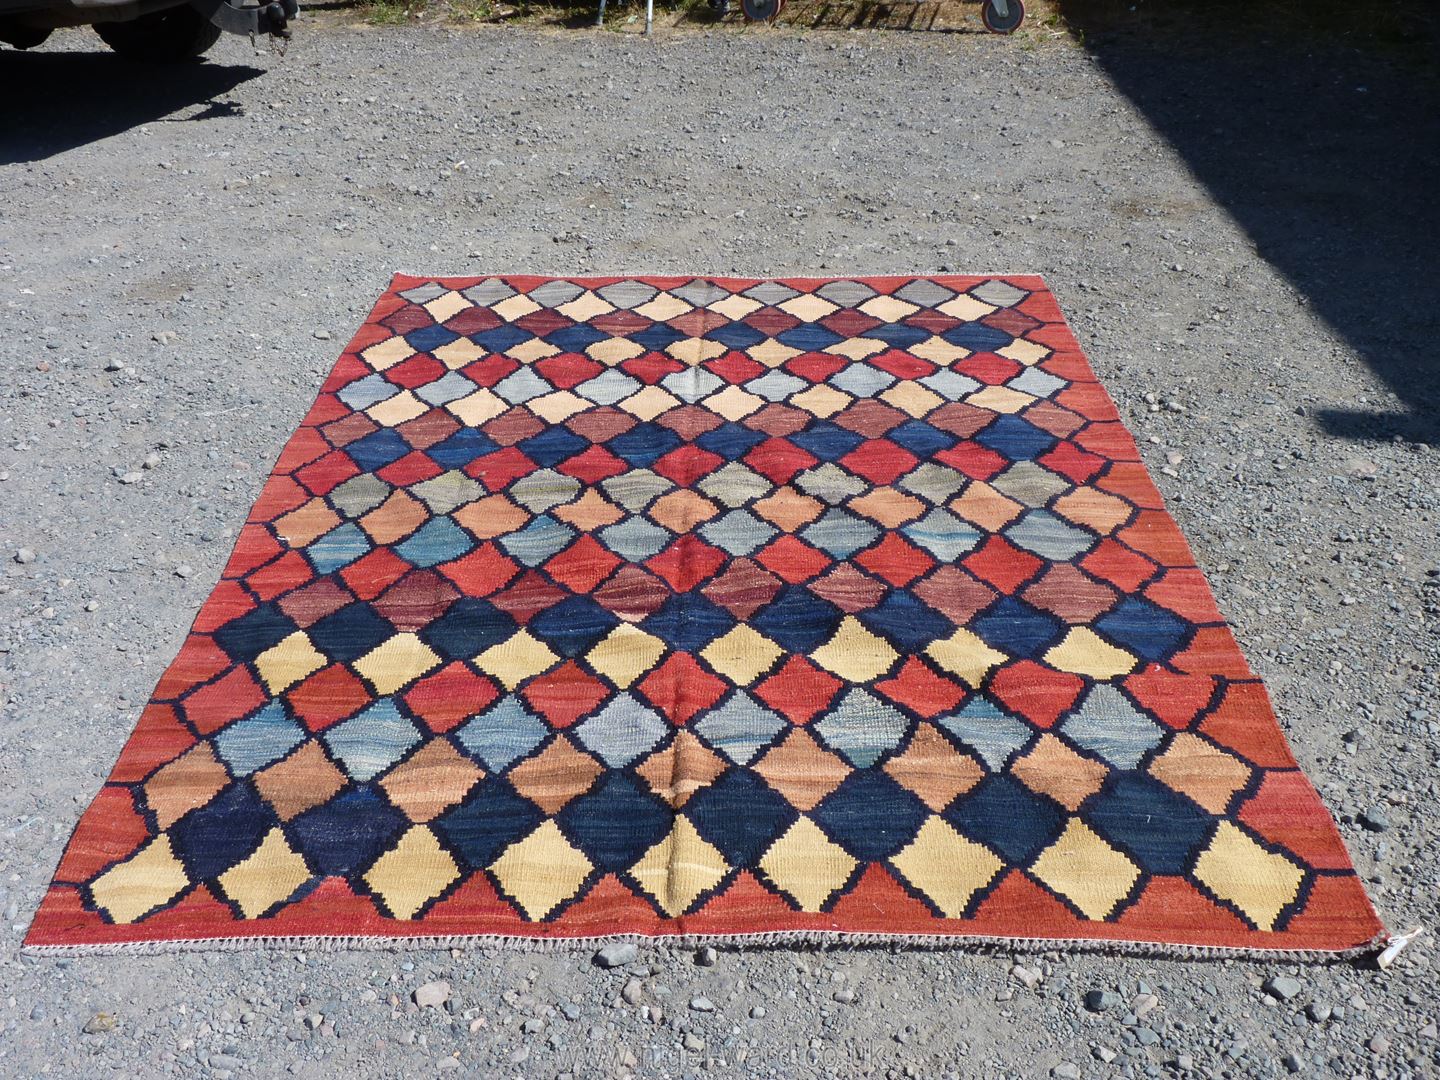 A large pure wool Afghan Chobi handmade Kilim Carpet, in orange, beige and blue geometric pattern,